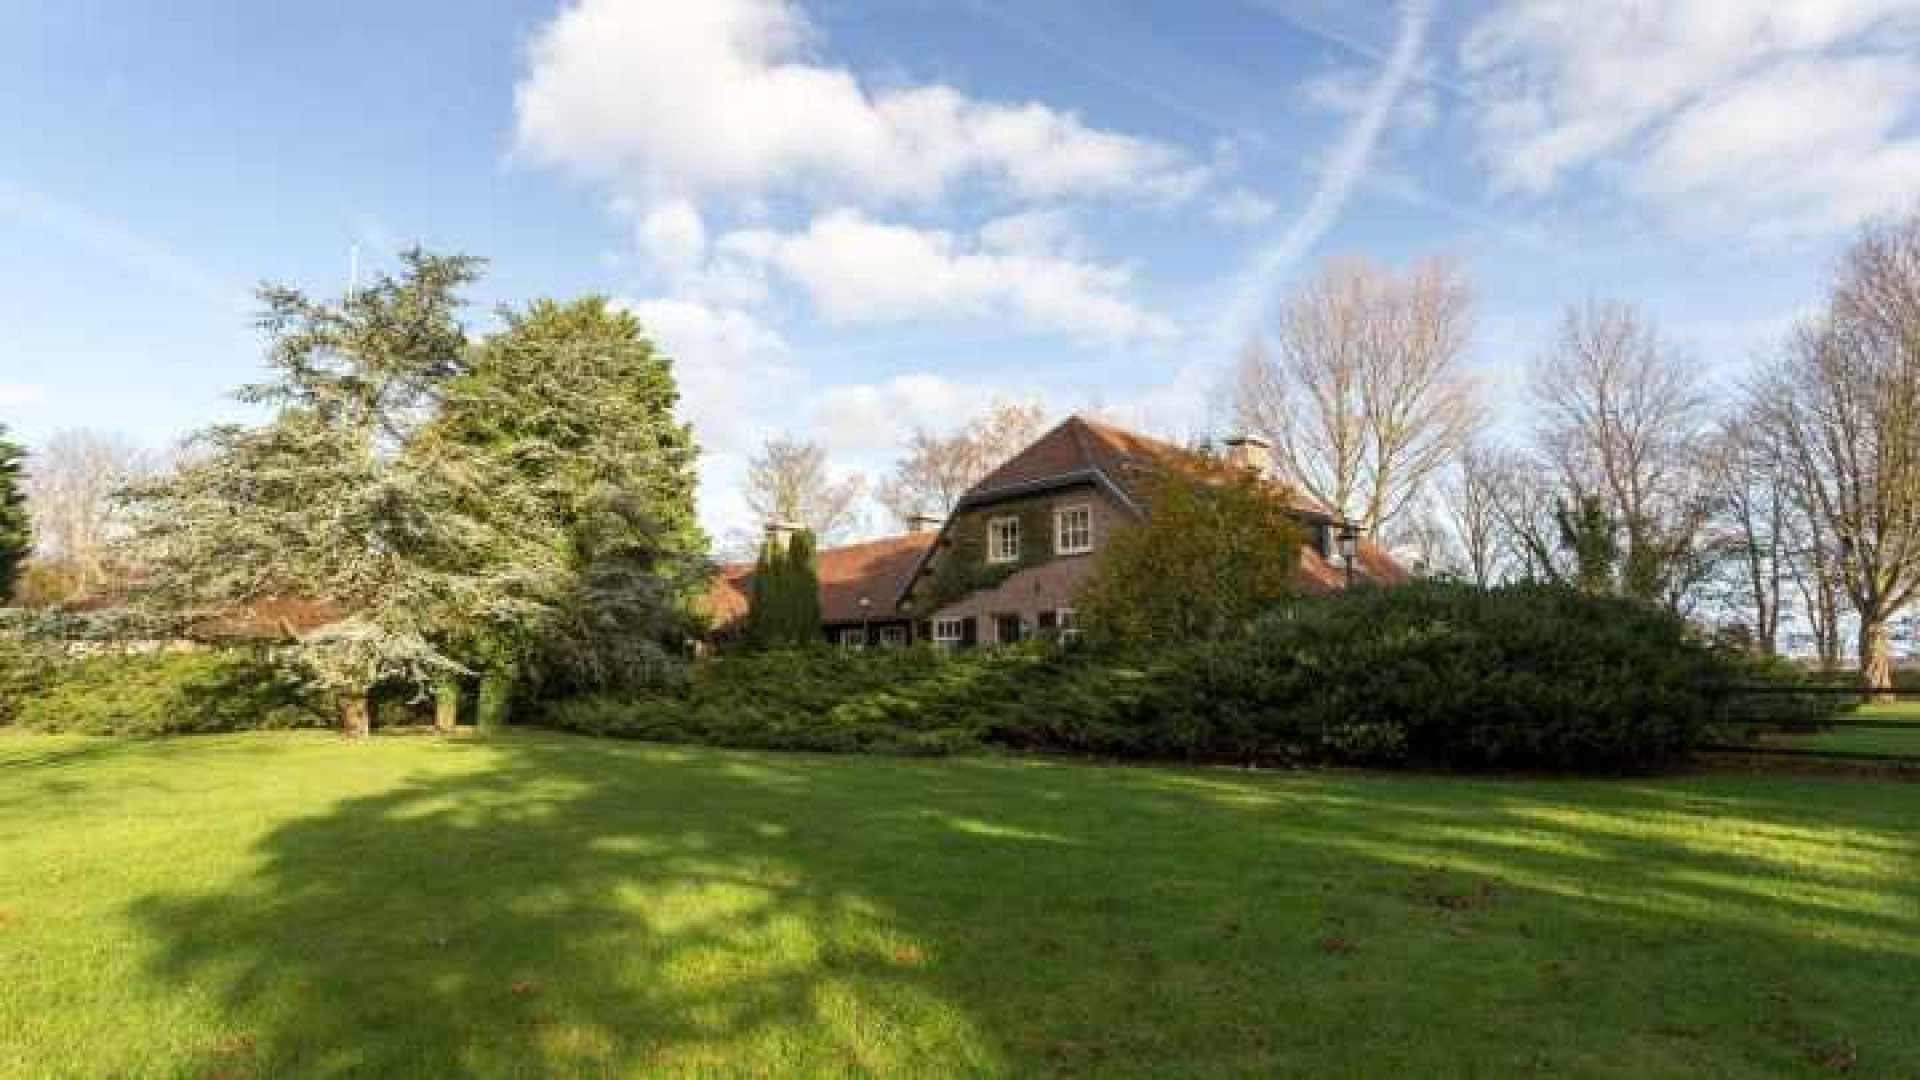 Henny Huisman verkoopt zijn villa zwaar onder de vraagprijs. Zie foto's 1